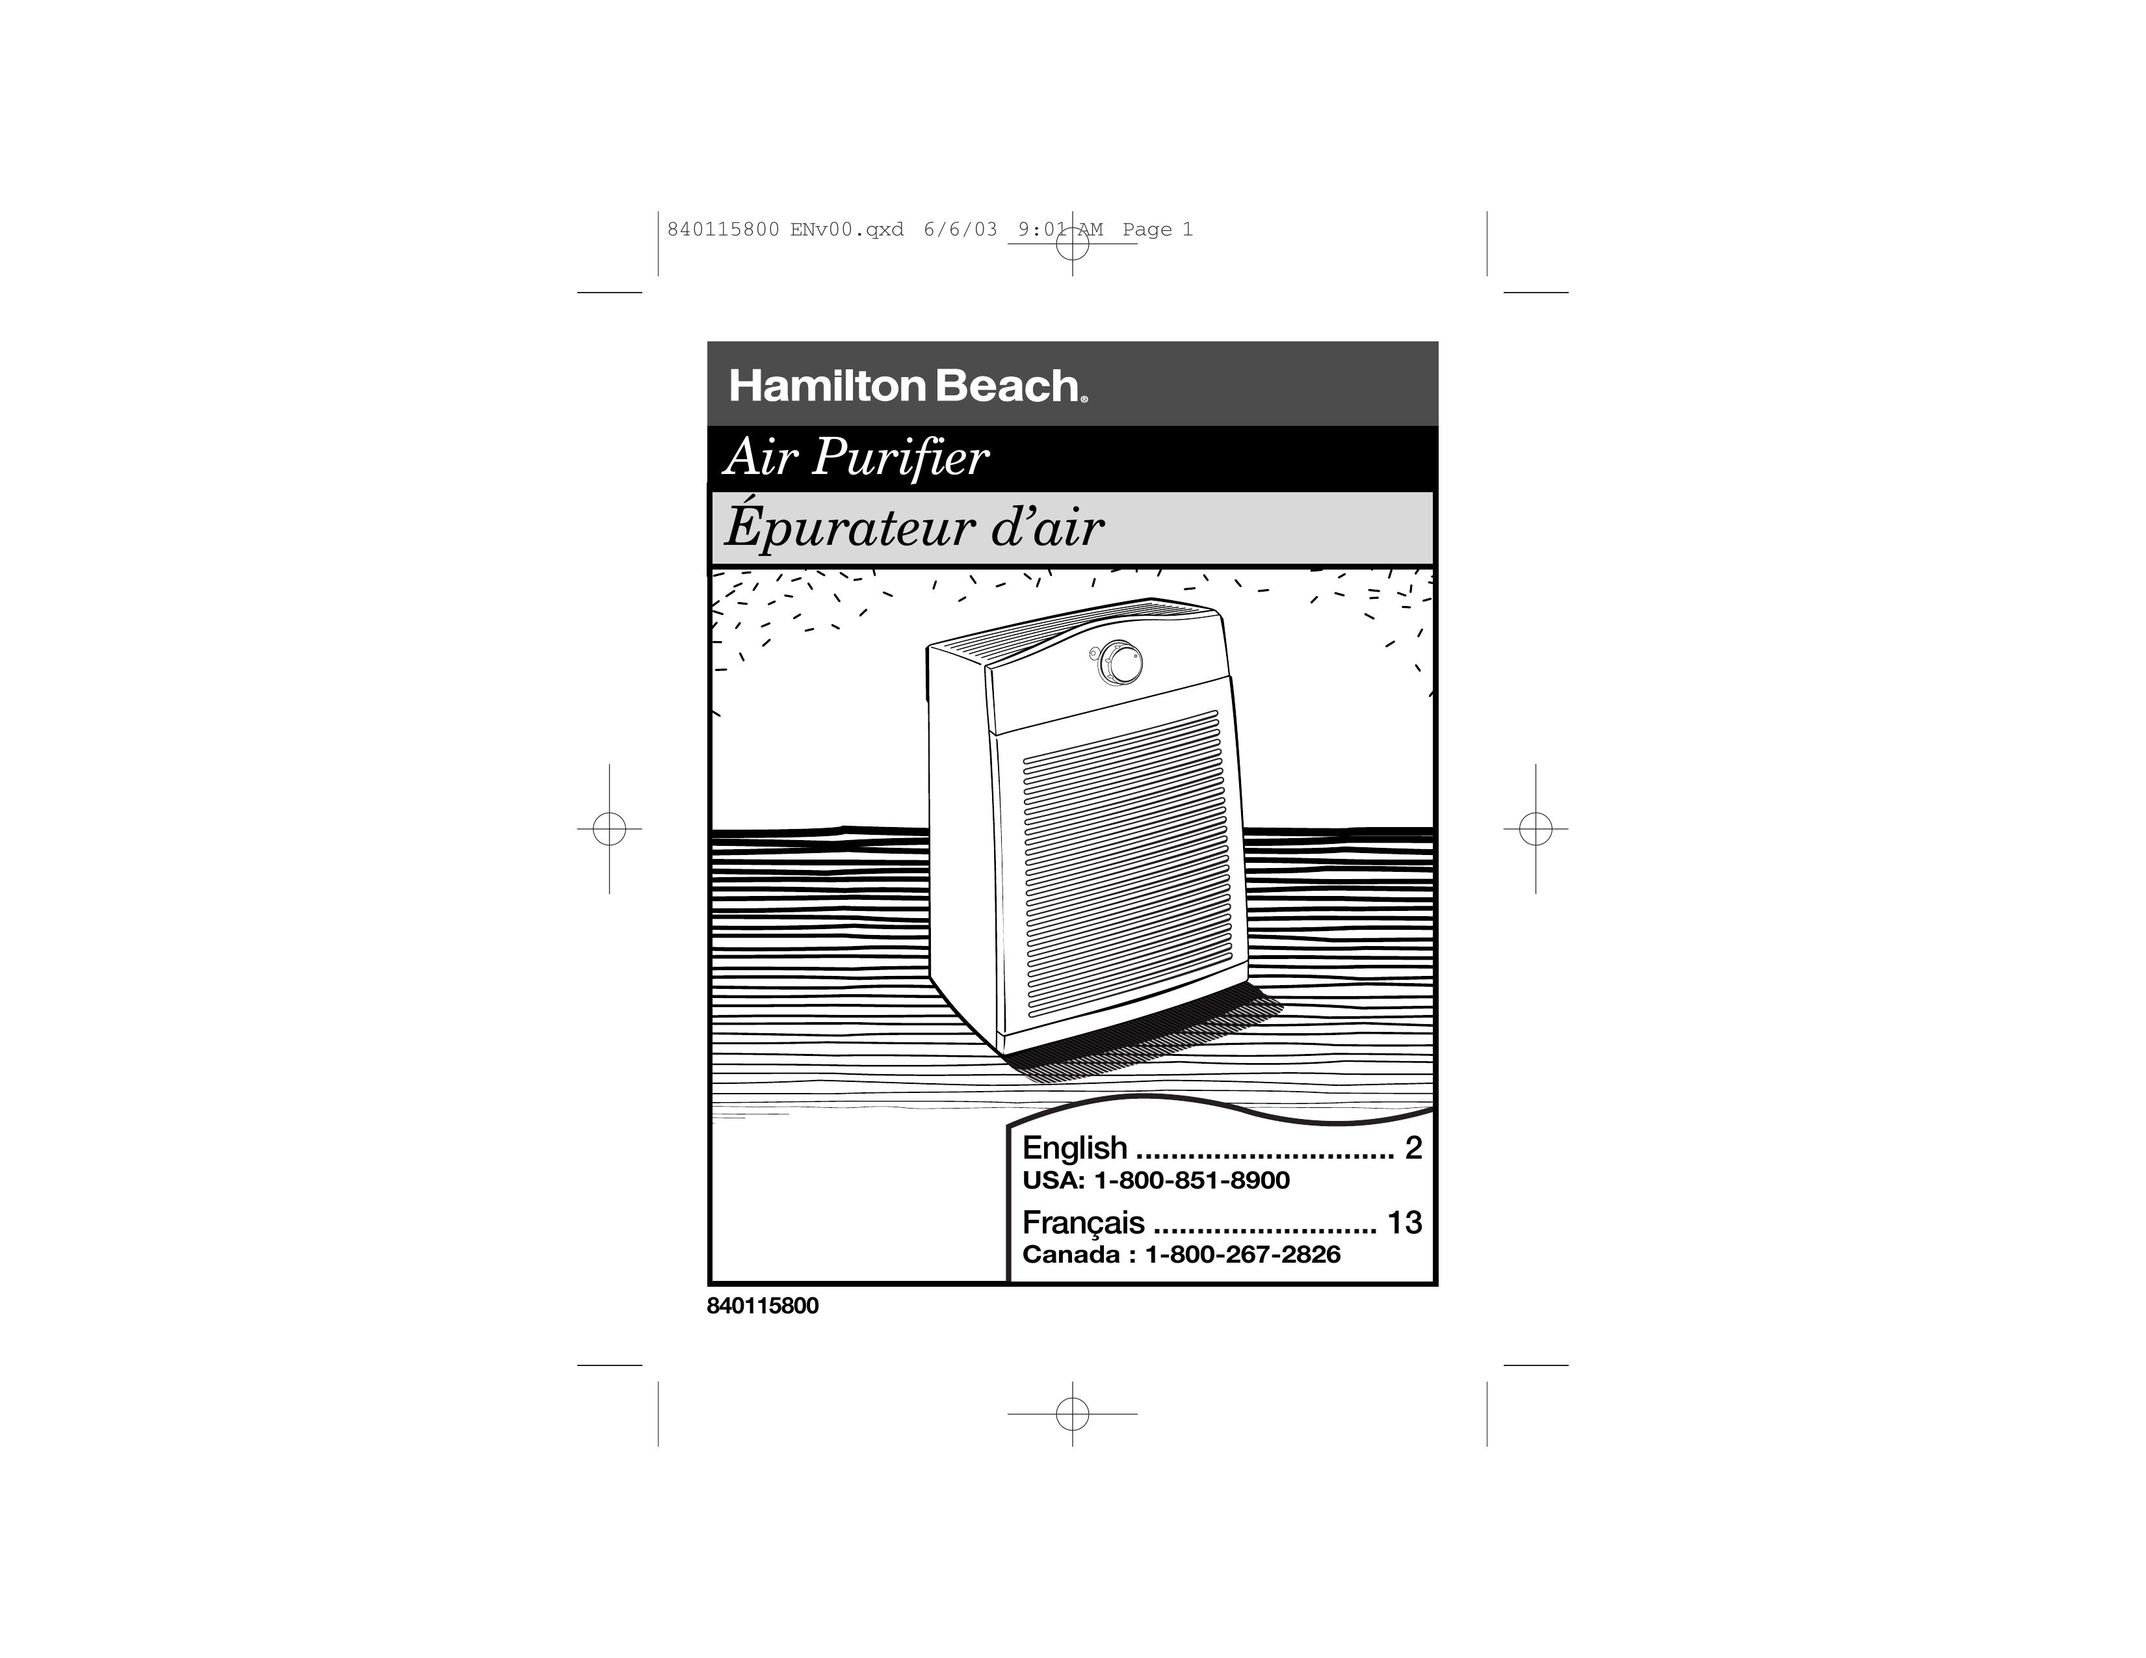 Hamilton Beach 840115800 Air Cleaner User Manual